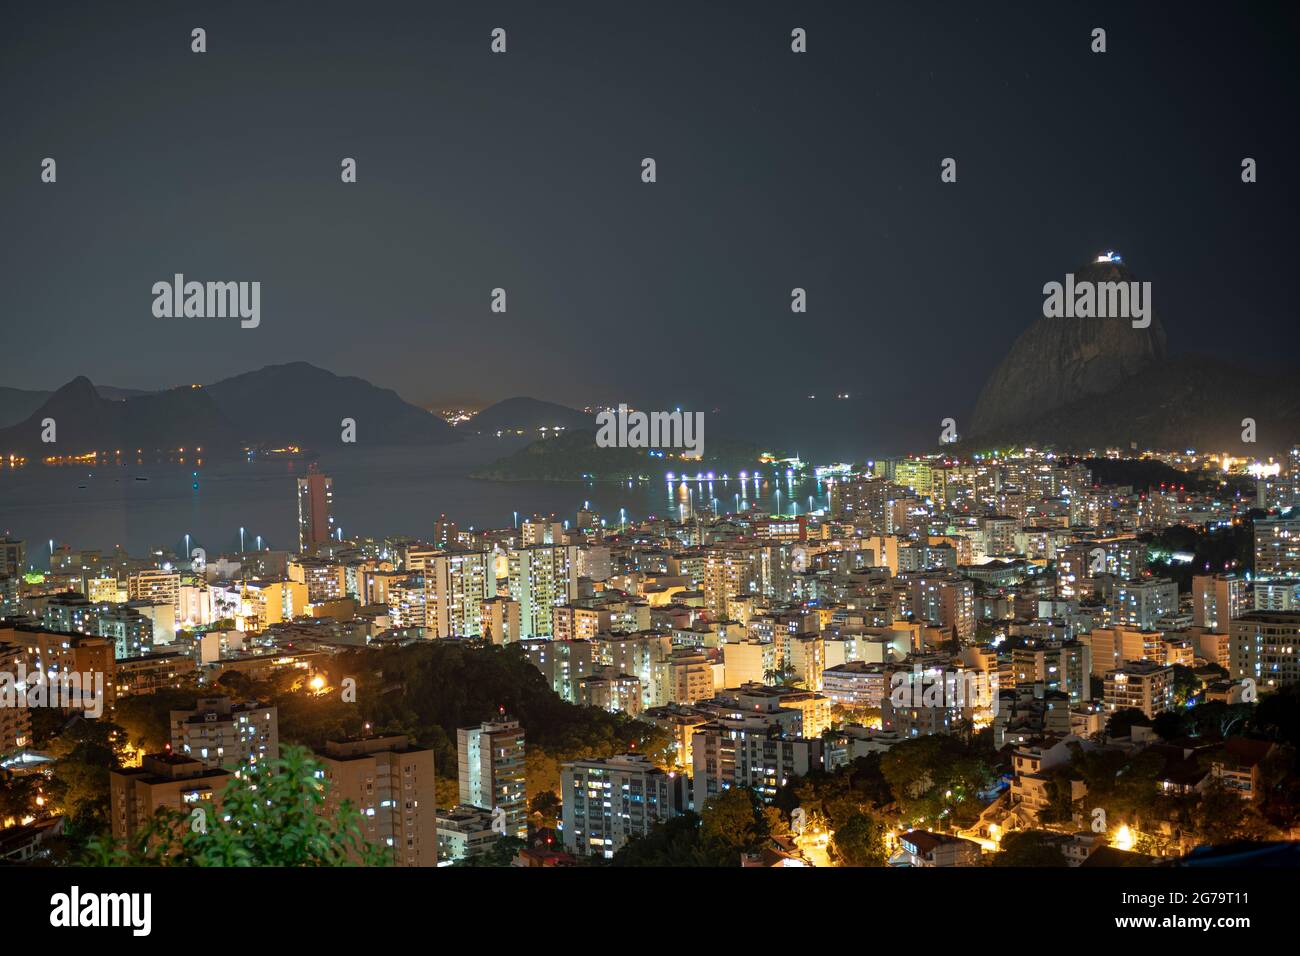 NightShot du mont Sugarloaf et de Botafogo à Rio de Janeiro, Brésil Banque D'Images